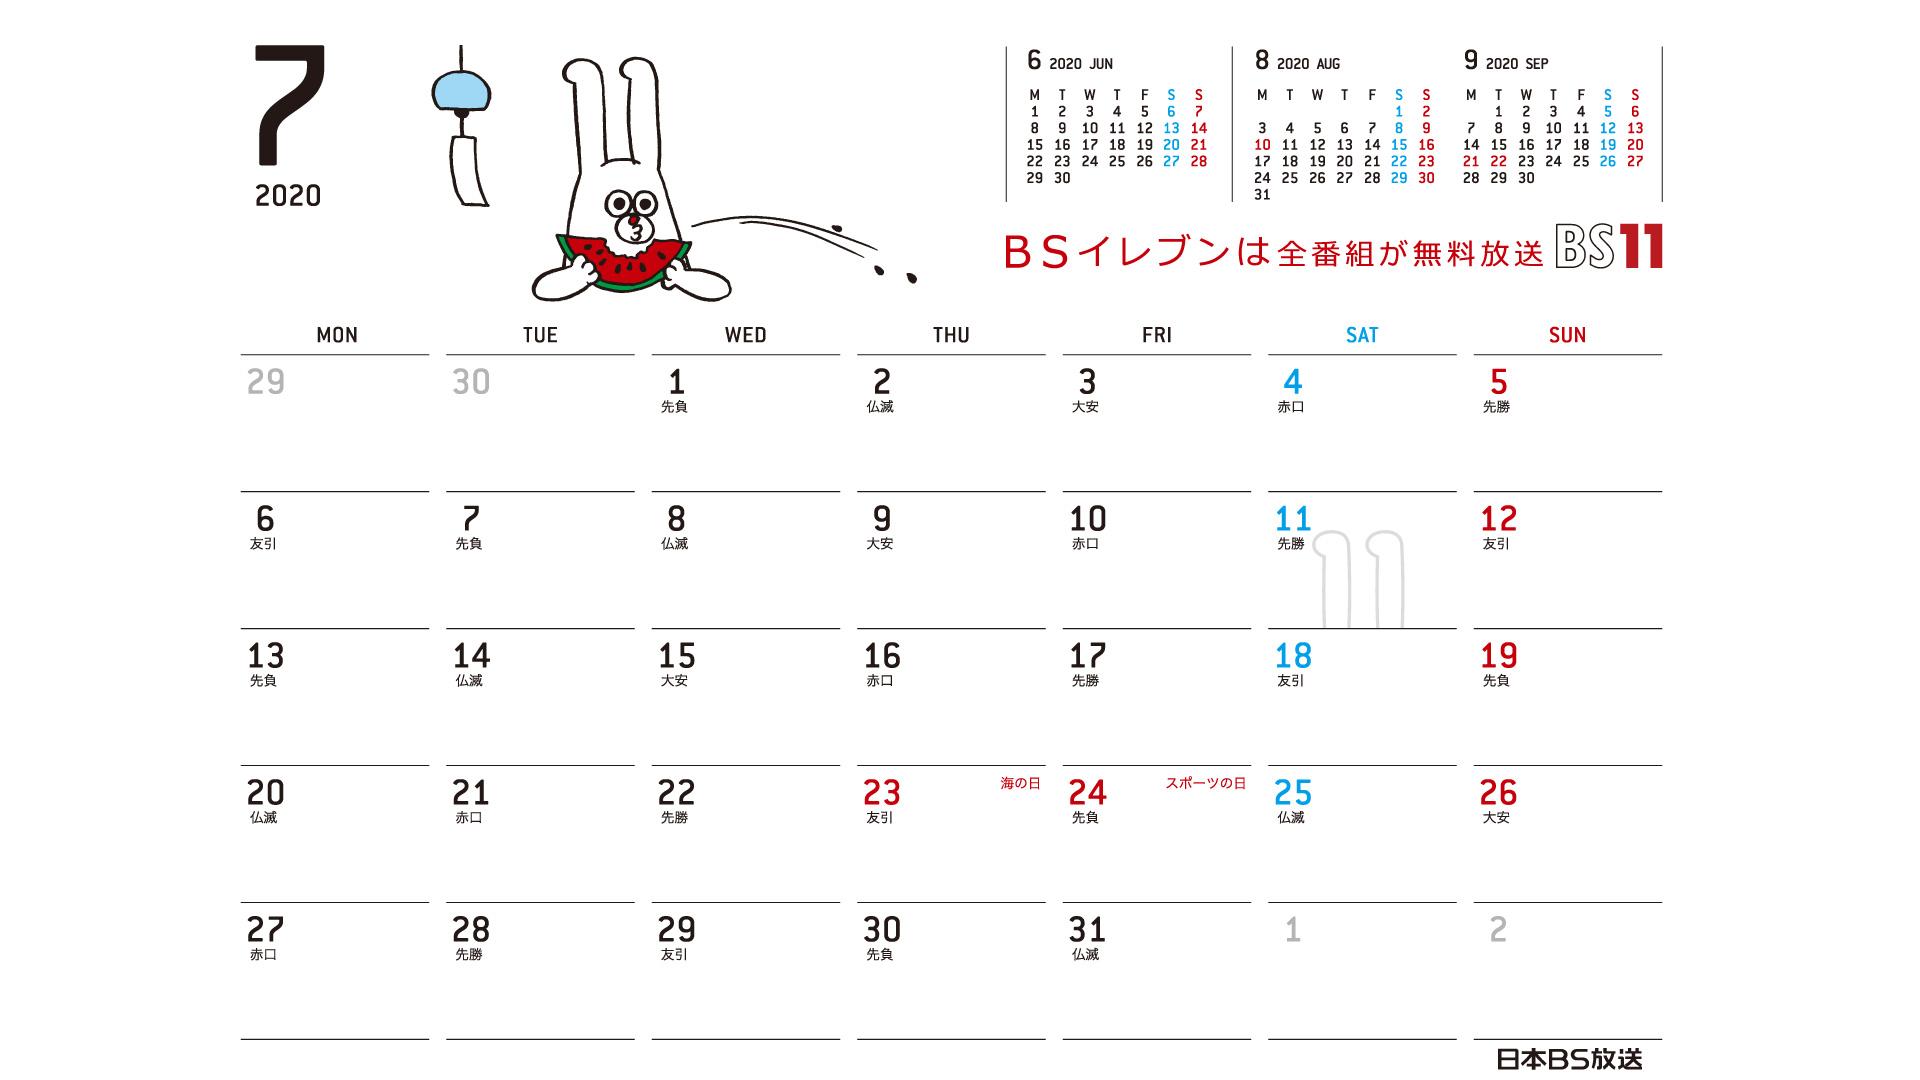 じゅういっちゃんのデジタルカレンダー 2020年7月 Bs11 イレブン いつでも無料放送